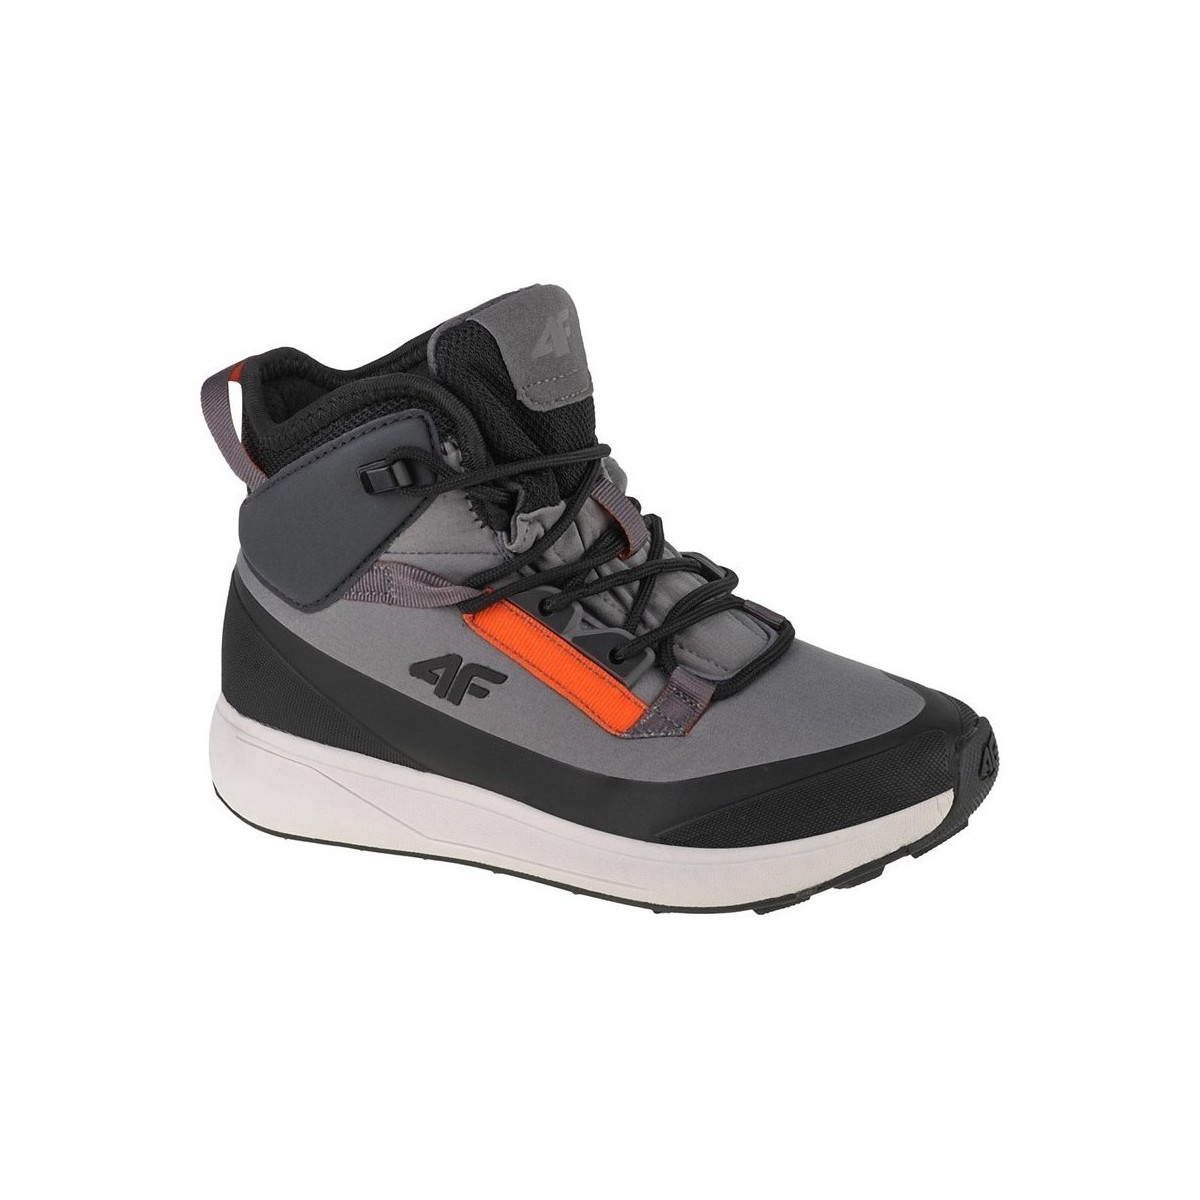 Schuhe Kinder Sneaker High 4F FWINM007 Grau, Schwarz